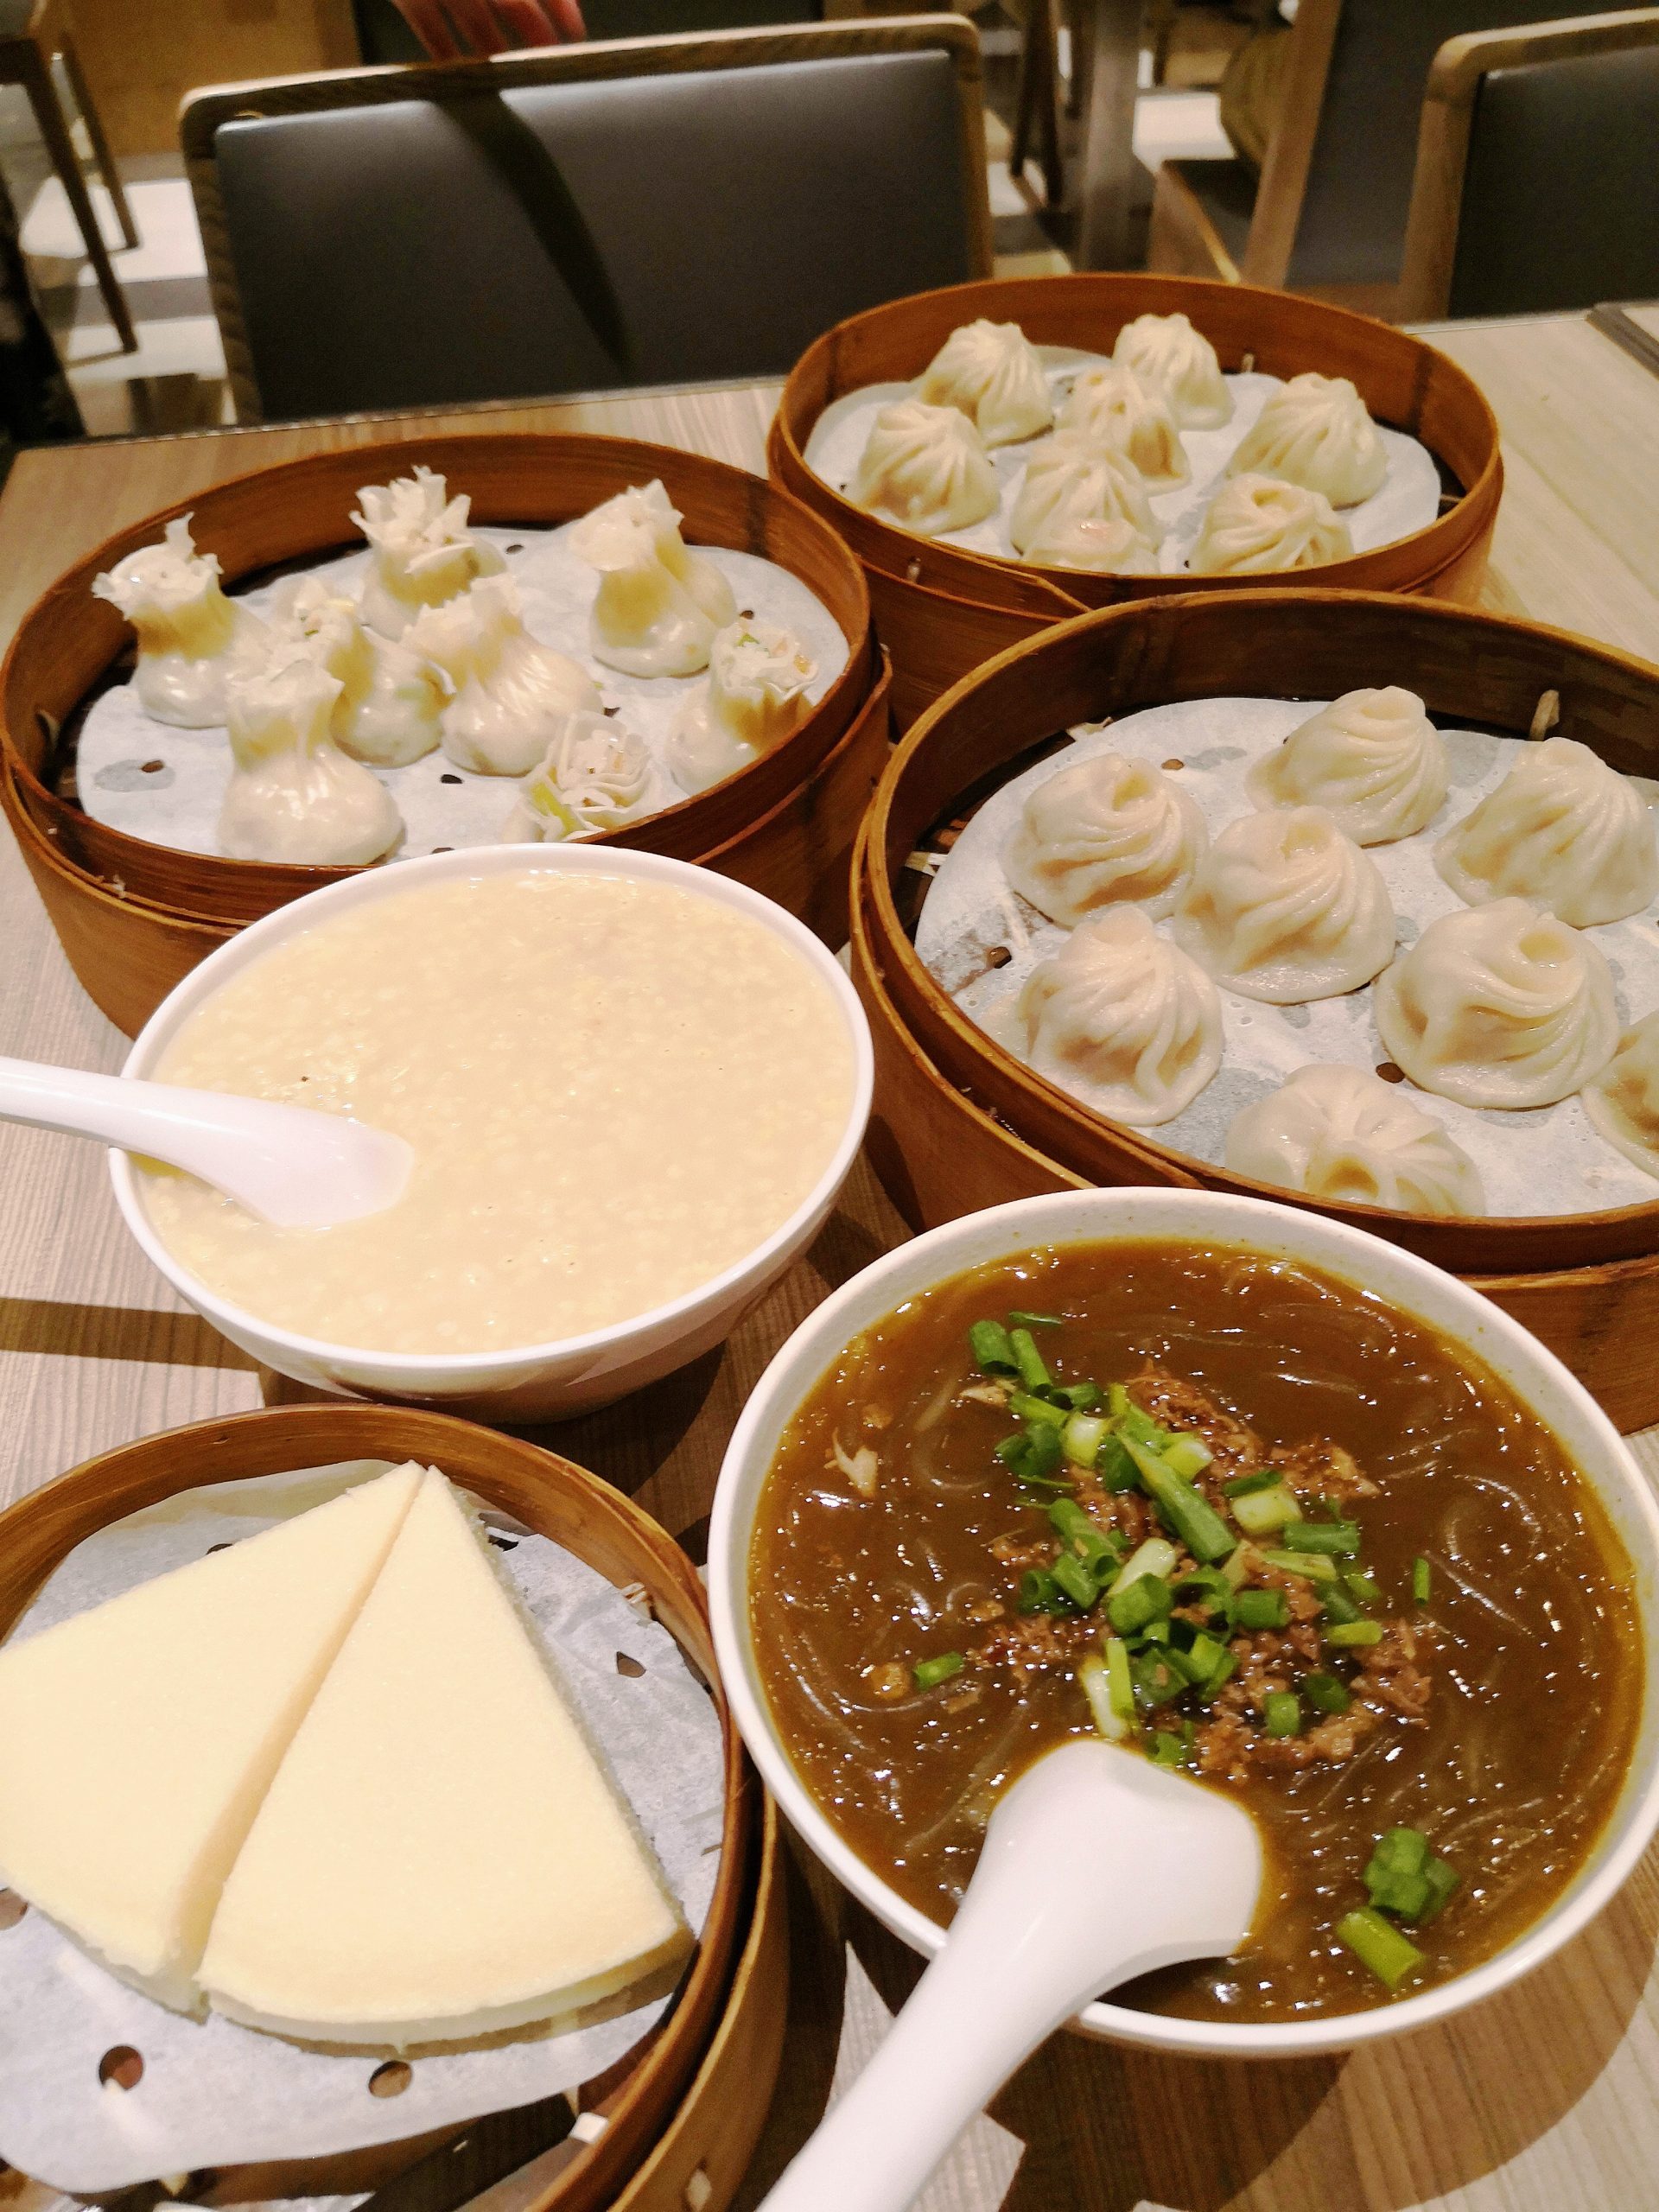 Food at Zhi Wei Guan